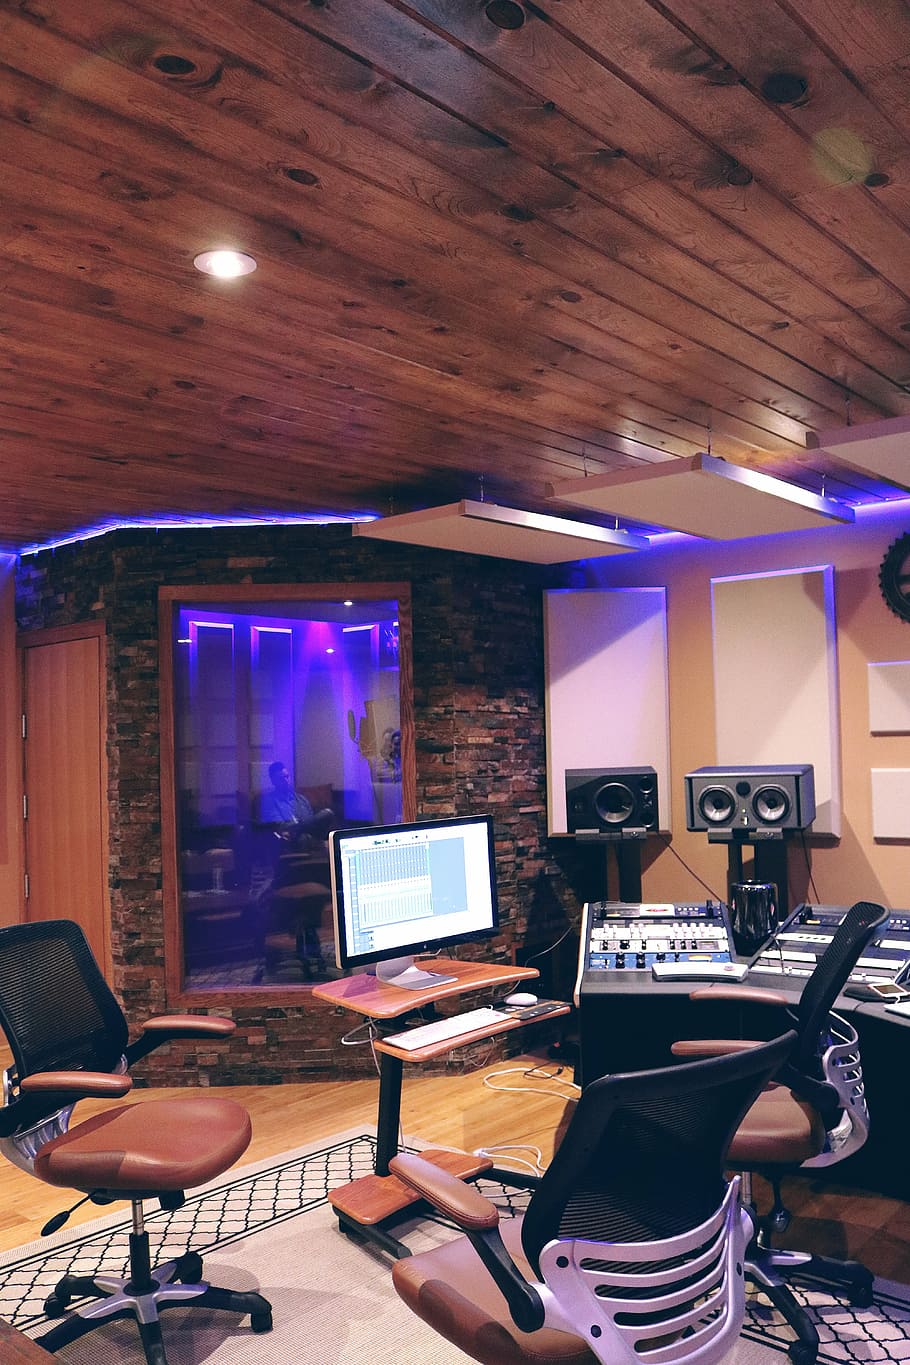 studio rekaman, ungu, cove light, musik, studio, studio musik, suara, audio, rekaman, peralatan